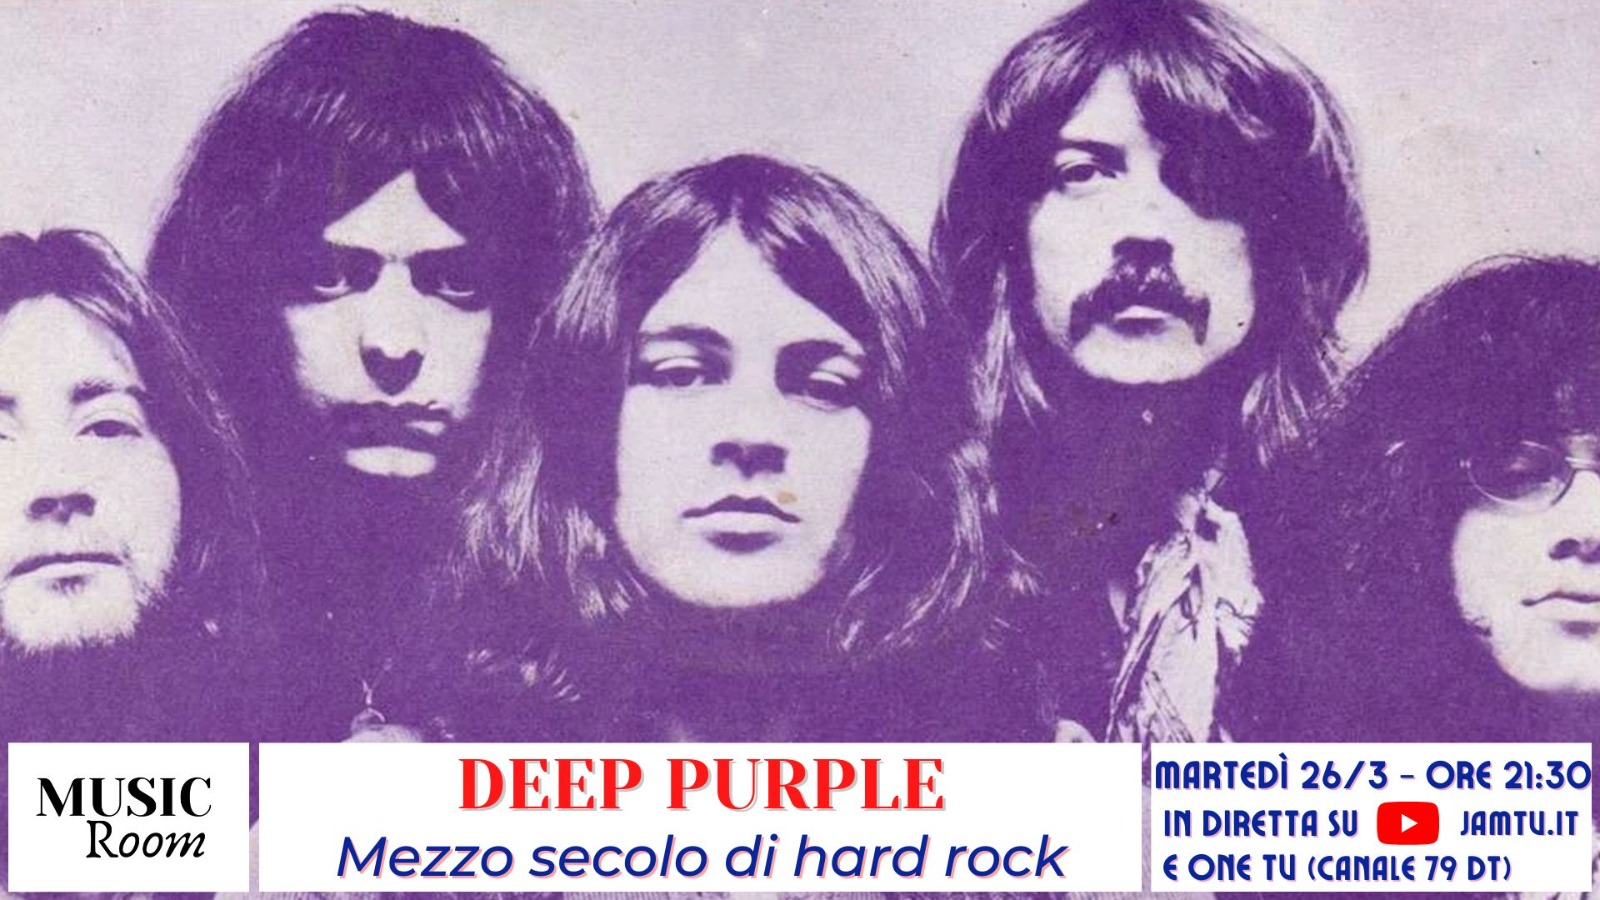 Deep Purple - Mezzo secolo di hard rock - Music Room - Diretta